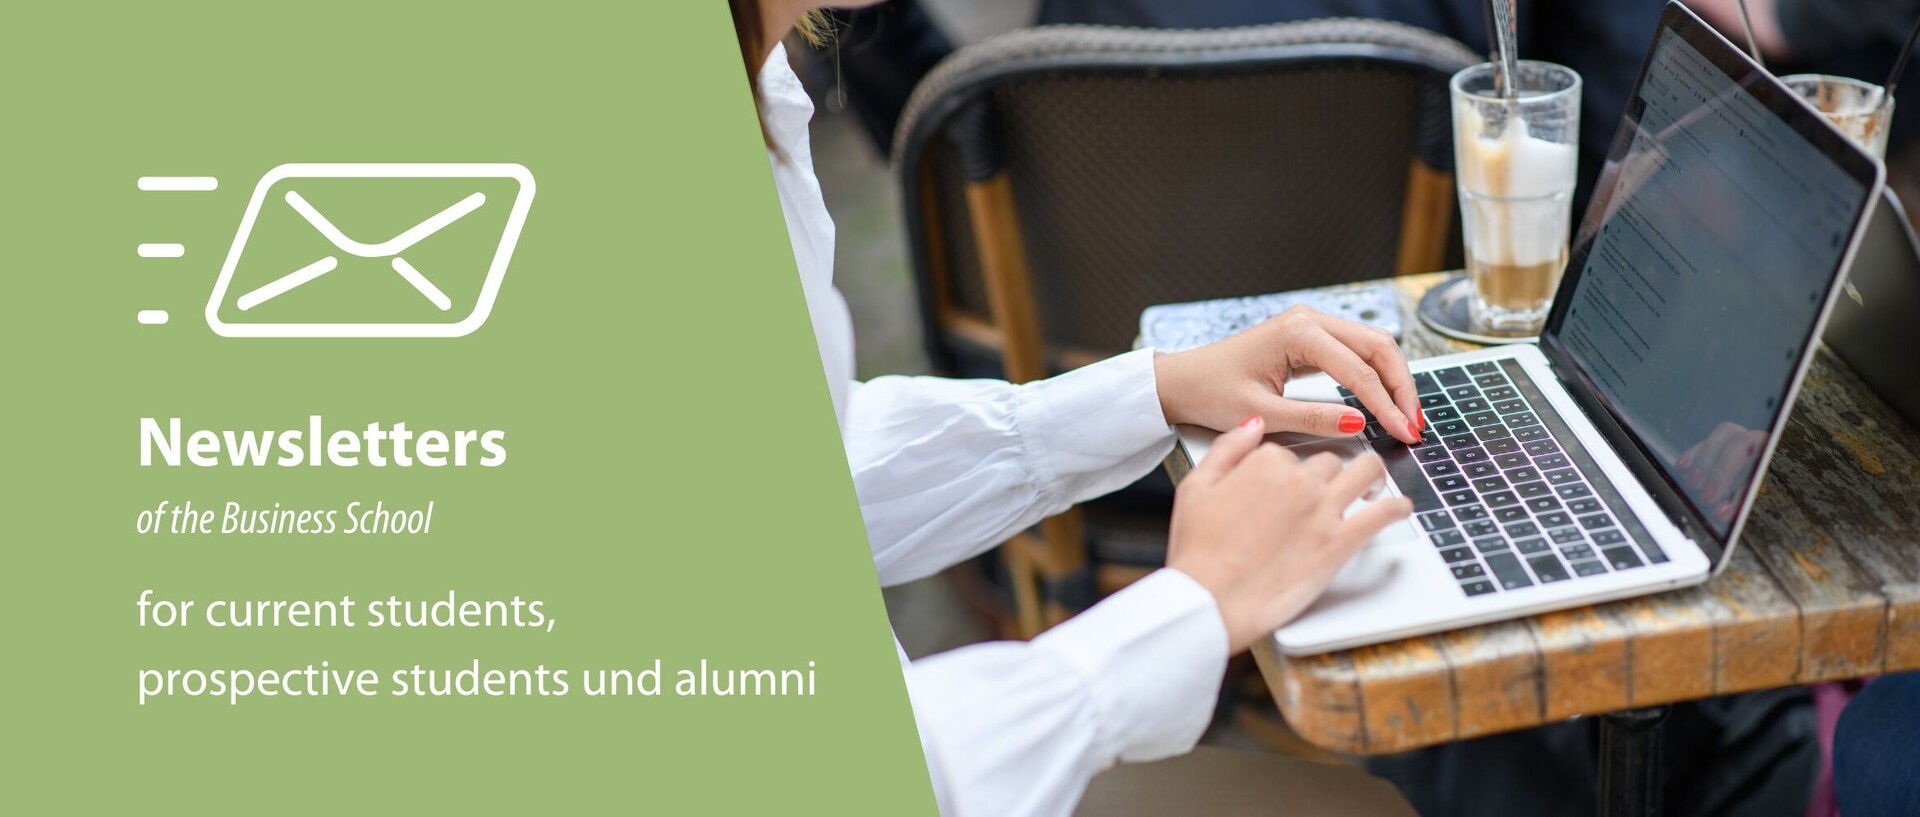 Bild von Händen mit Laptop und Schriftzug: Newsletter of the Business School for current students, prospective students and alumni